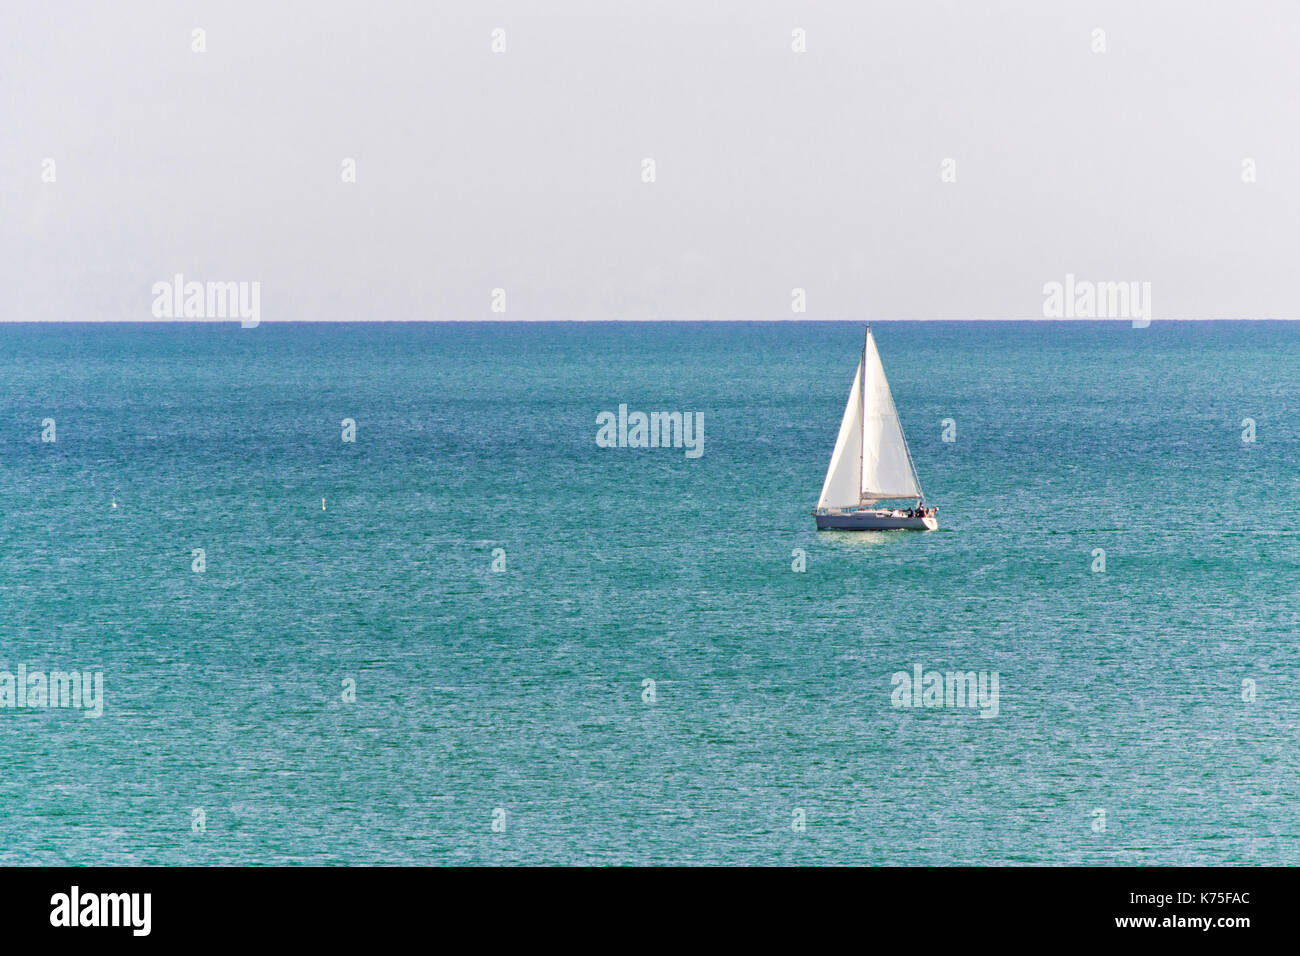 Segelboot im Meer. Luxus yachting in einer ruhigen Wasser. für Marine- und Navigationskonzept Stockfoto